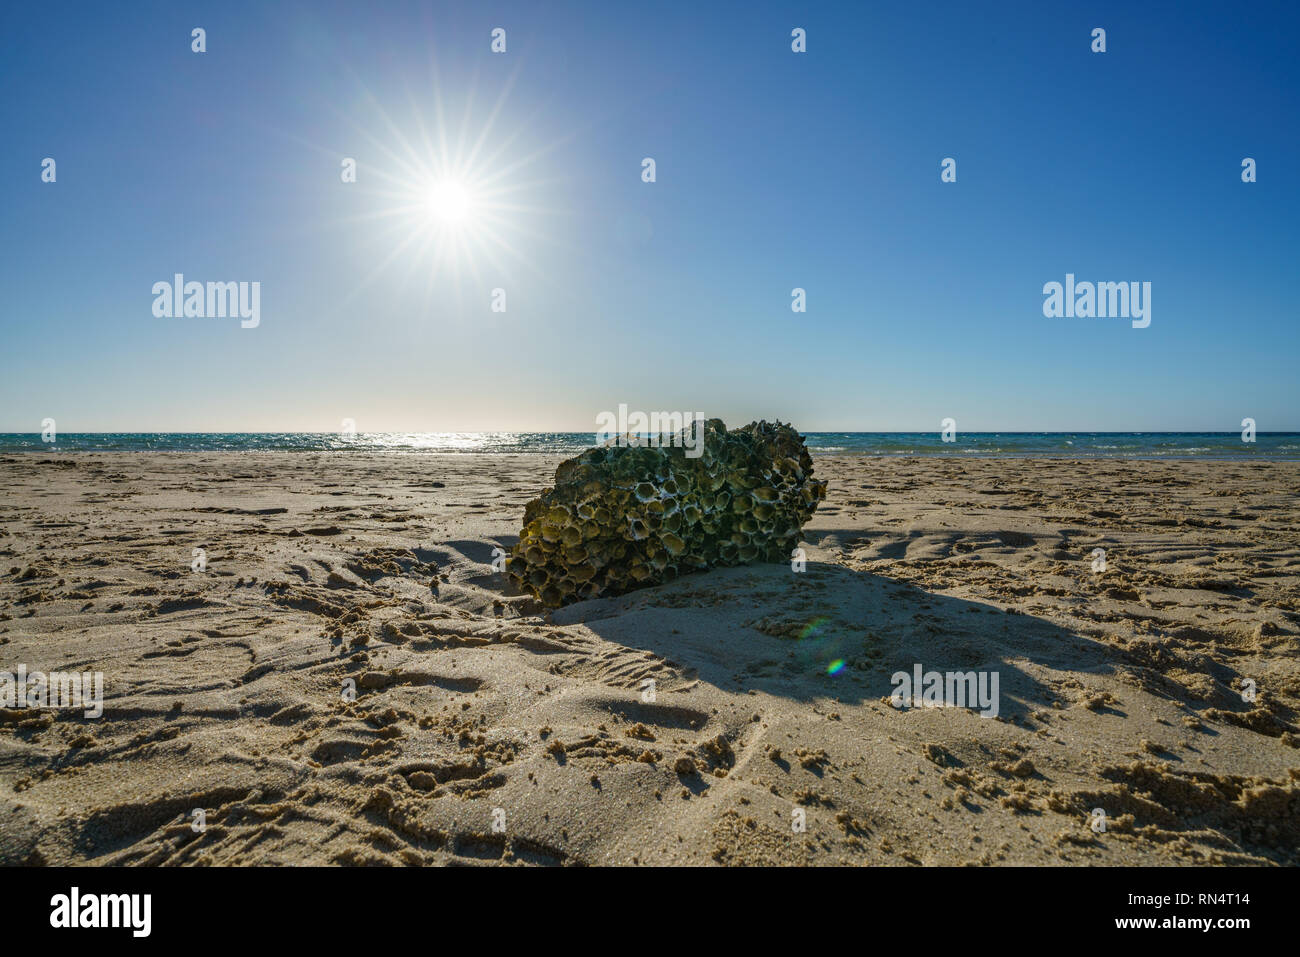 Coral unter der Sonne am Strand von Rechnungen Bay, Coral Bay, Coral Coast, Western Australia Stockfoto